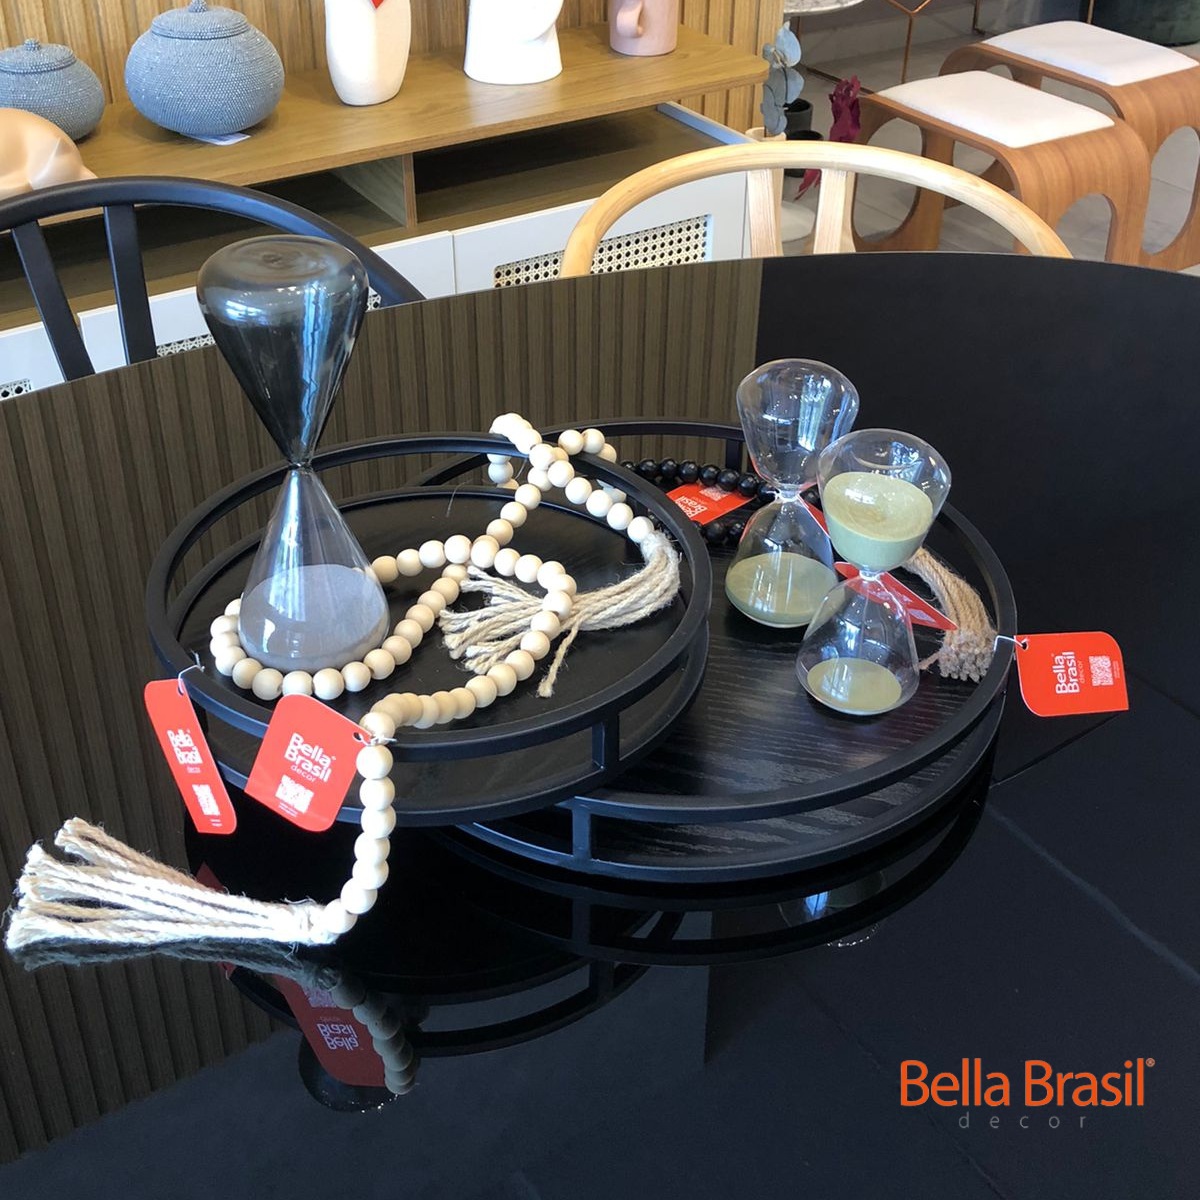 Kit Ascoli Bandejas em Madeira com Metal para Decoração Redonda 2PCS - Bella Brasil Decor